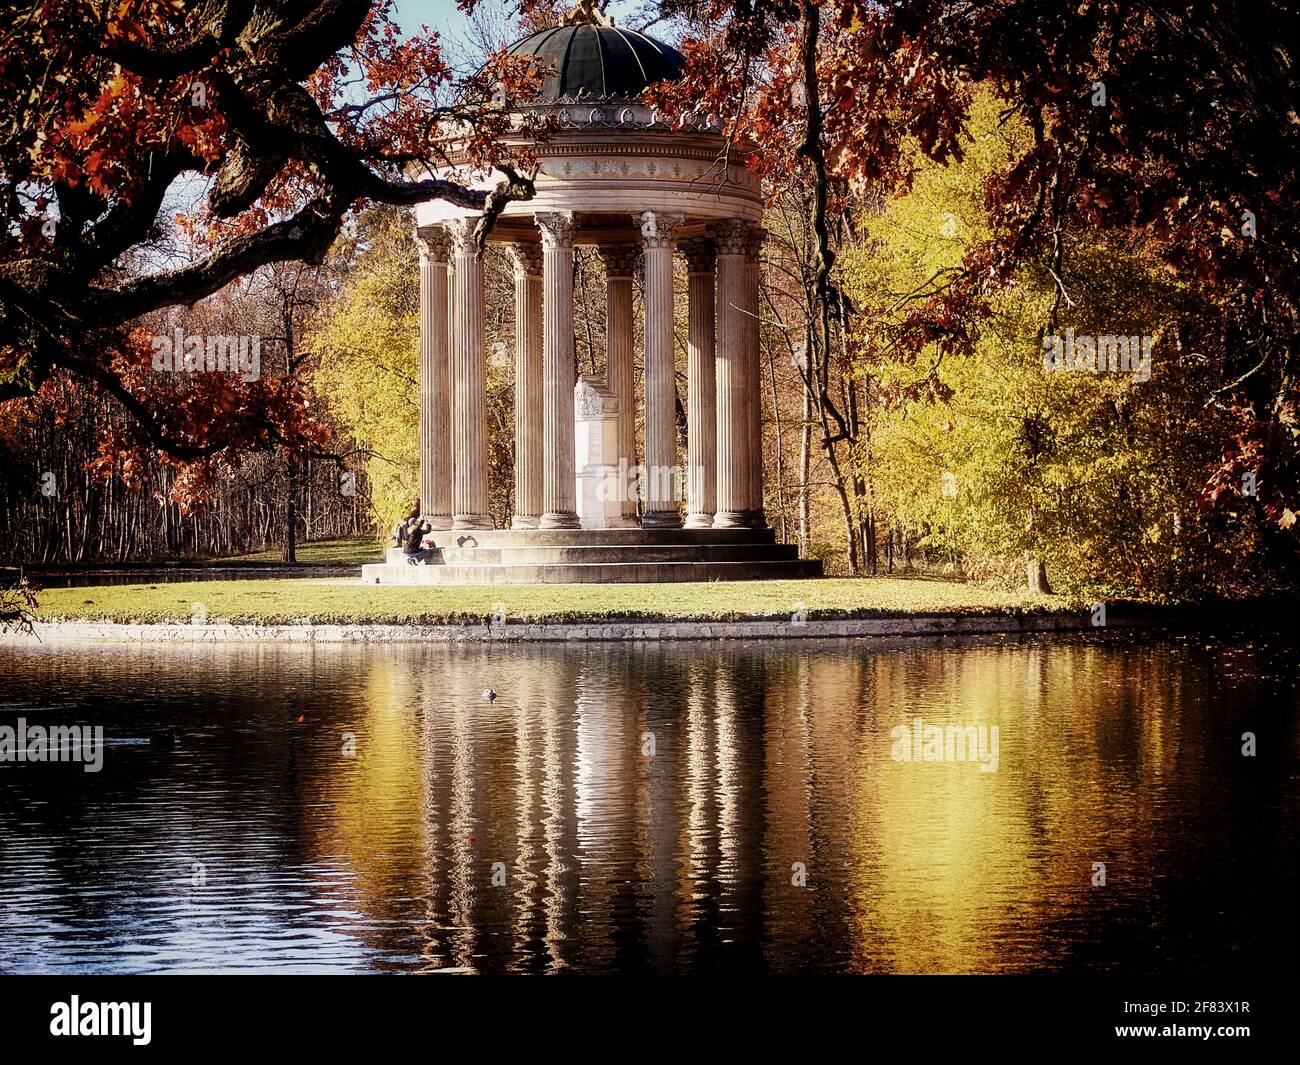 Munich, le parc du château de Nymphenburg résidence des rois bavarois : vue suggestive sur les monopteros, temple circulaire en marbre d'Apollon encadré de feuilles rouges Banque D'Images